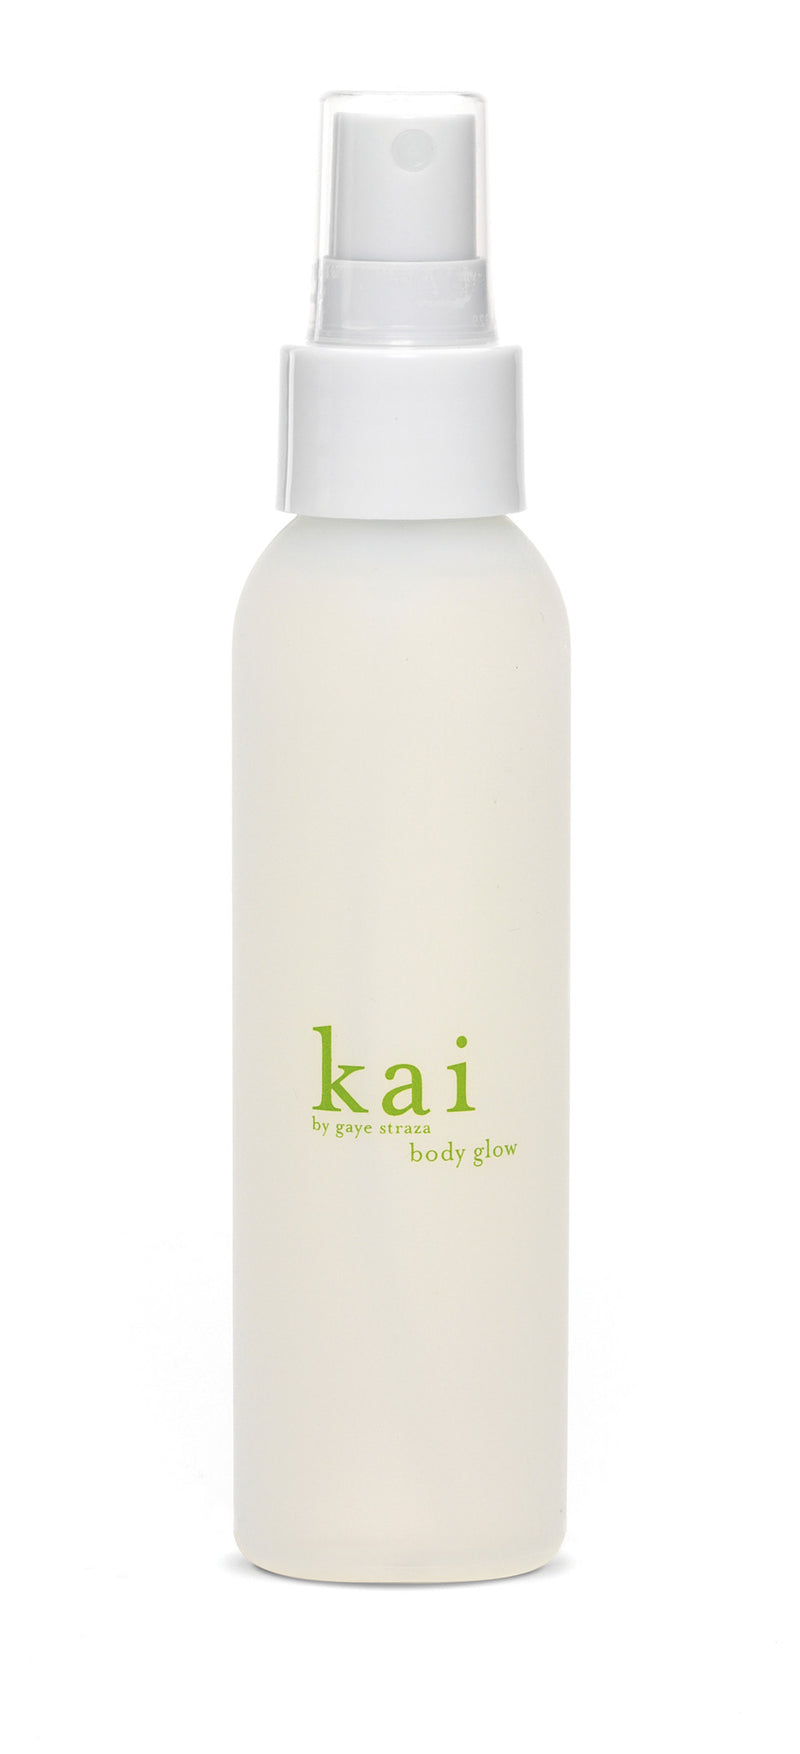 media image for kai body glow design by kai fragrance 1 273